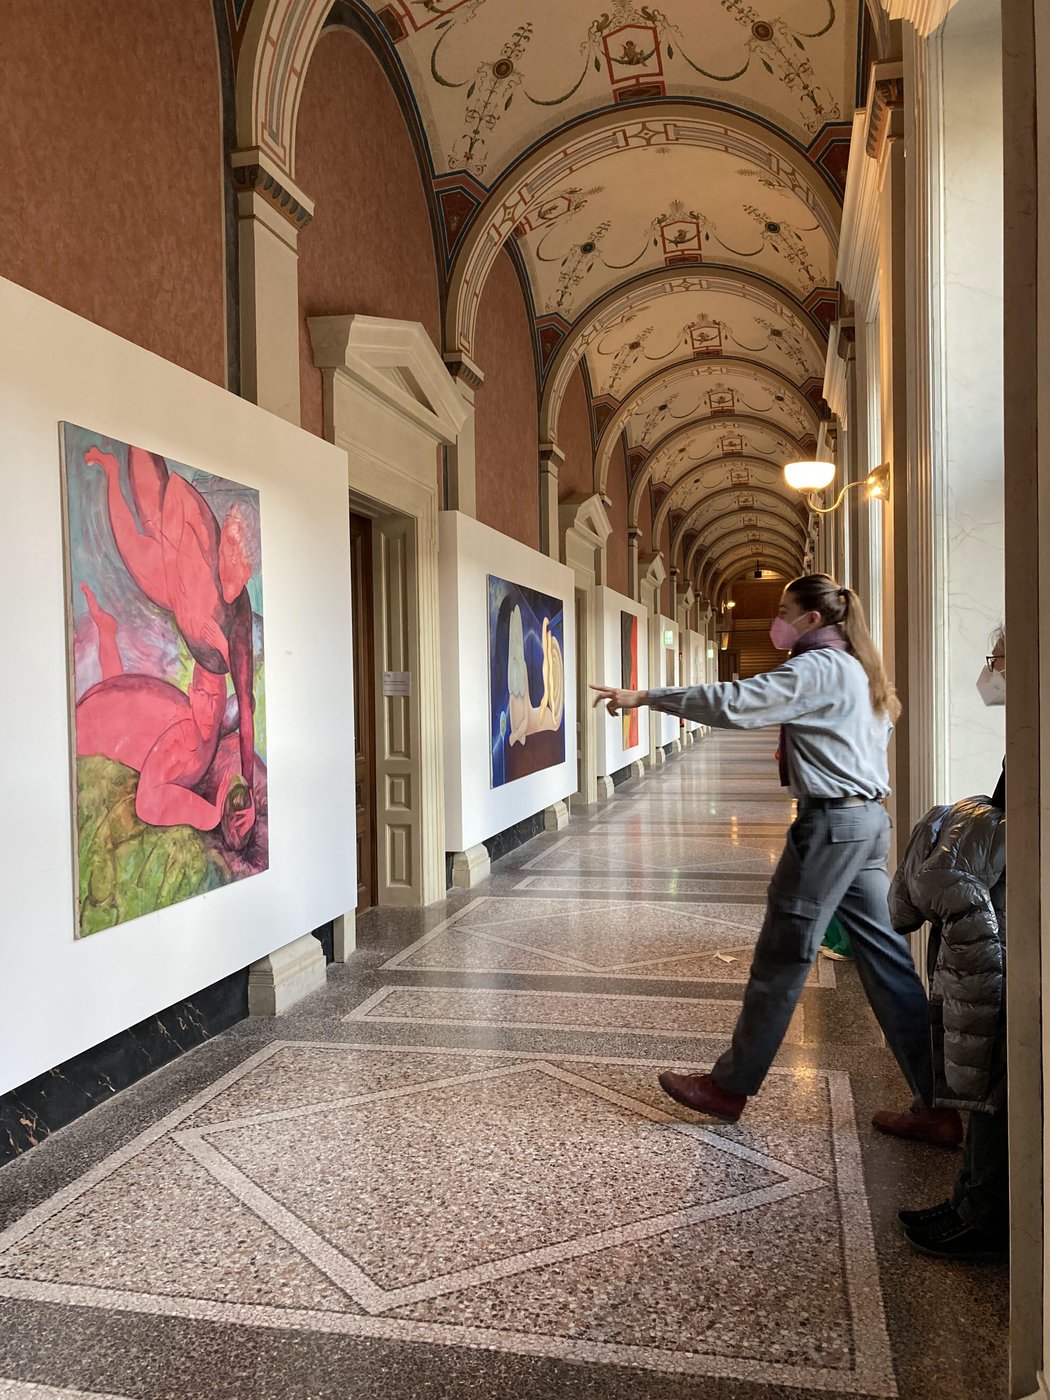 Foto von ausgestellten kunstwerken, eine Person geht darauf zu und deutet mit der Hand auf ein Gemälde